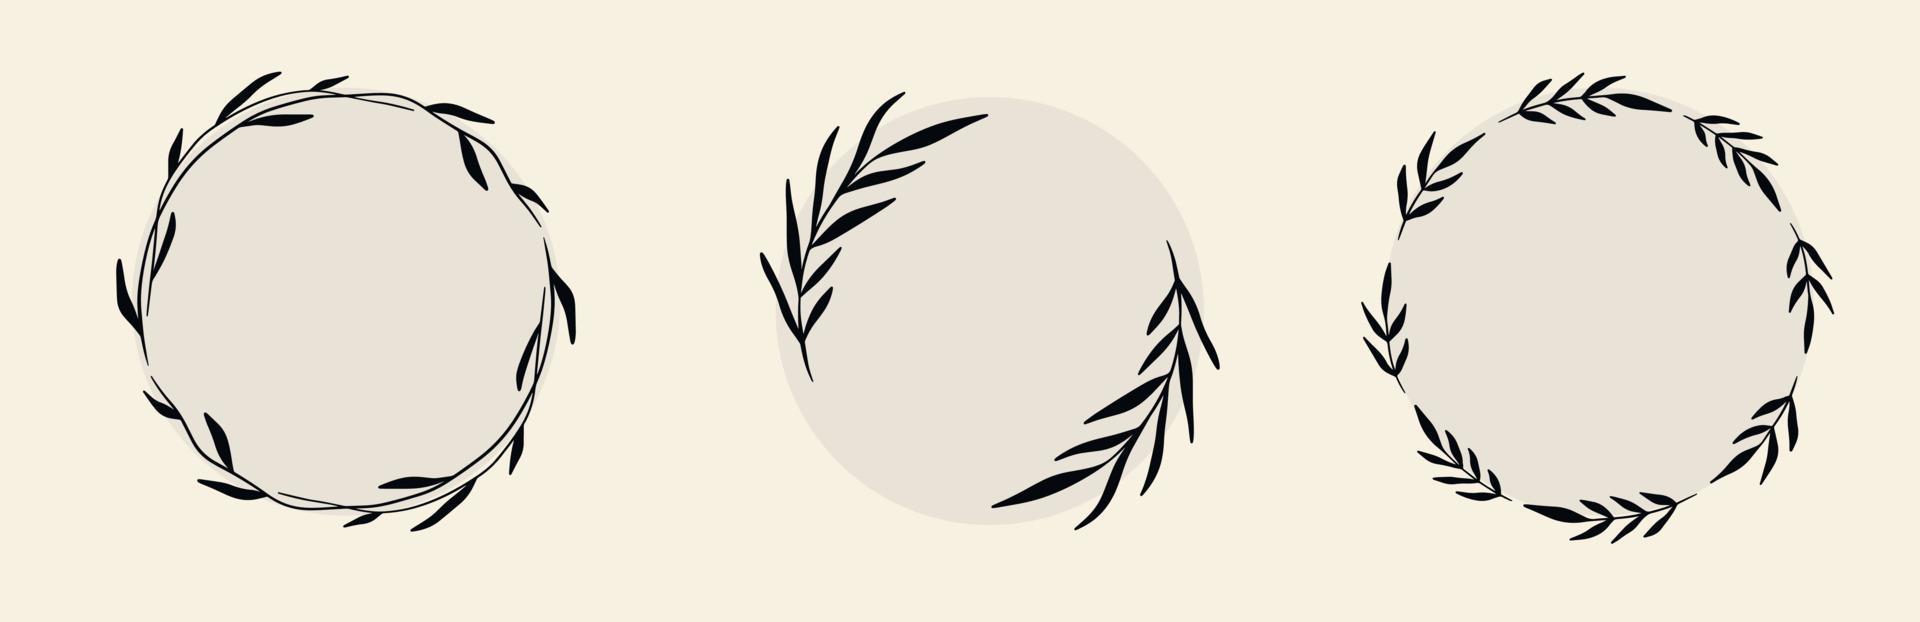 conjunto de marco floral de círculo decorativo dibujado a mano de garabato negro. corona vectorial con ramas, hierbas, plantas, hojas. ilustración aislada sobre fondo blanco vector